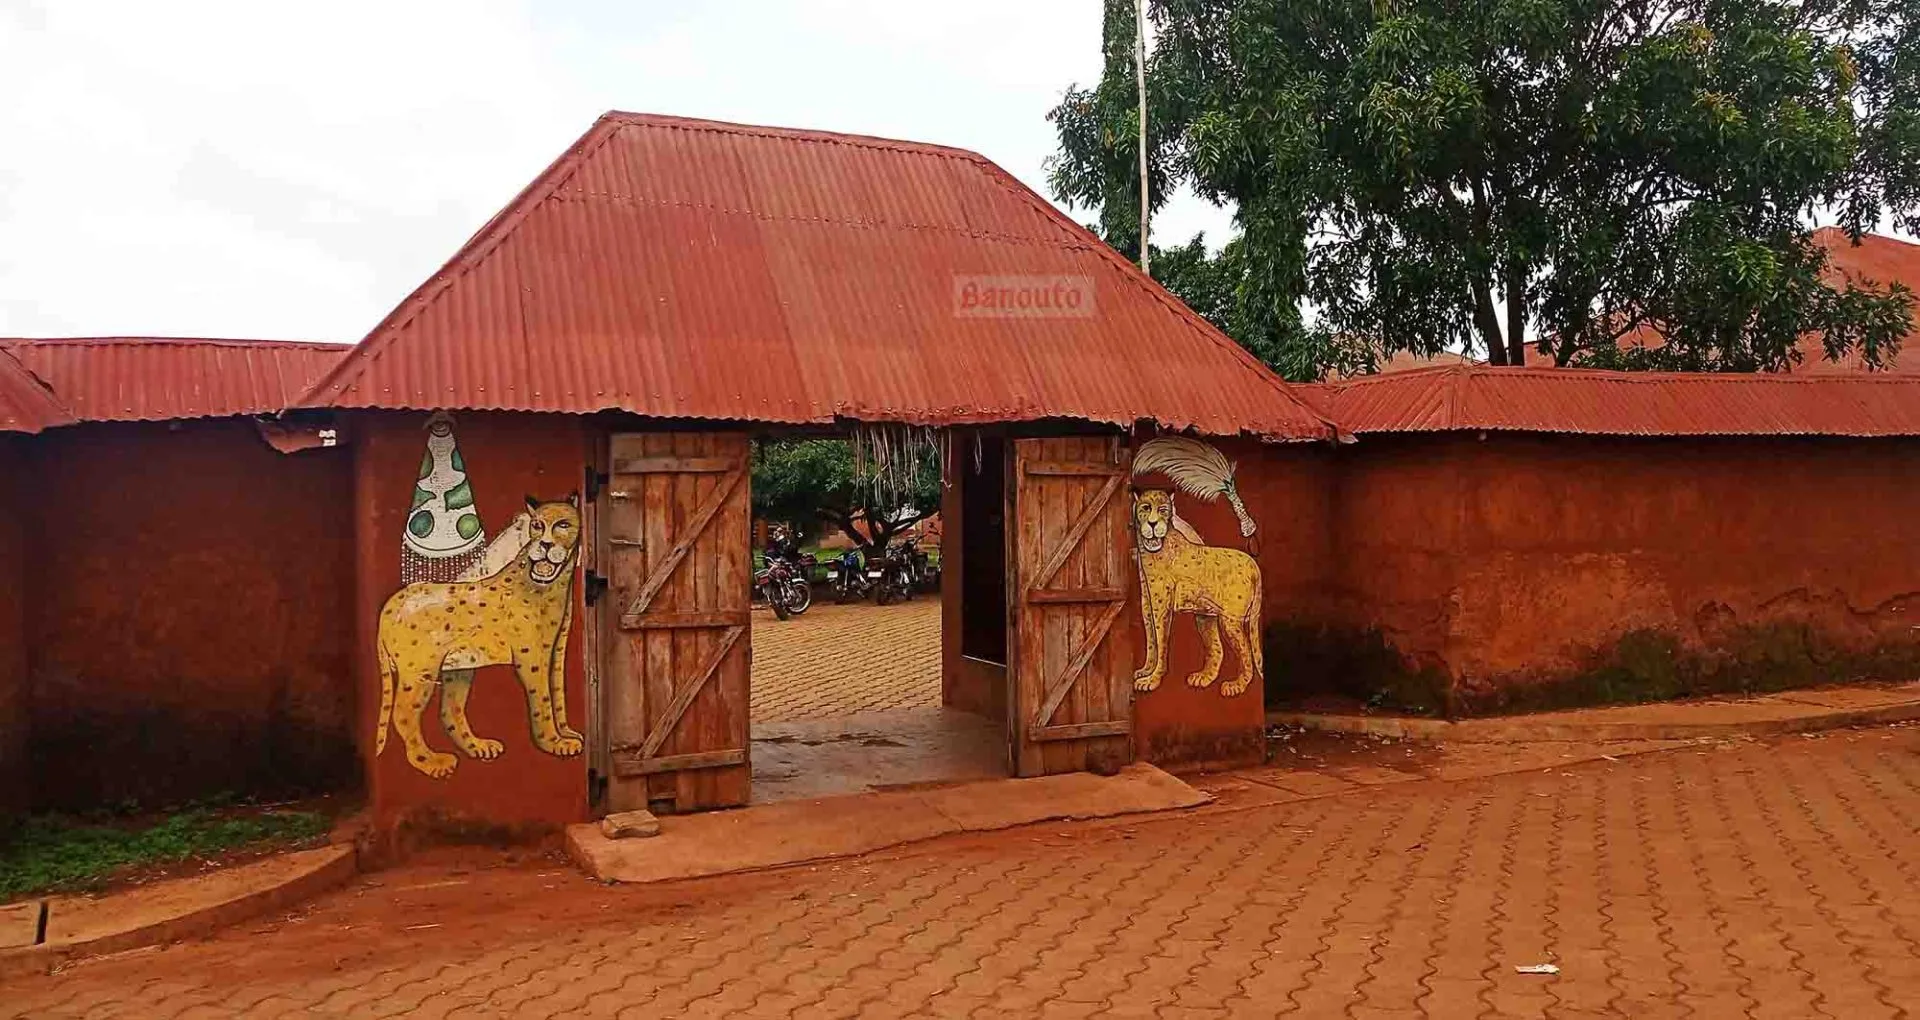 Tourisme au Bénin : Kétou, berceau du Guèlèdè, patrimoine culturel immatériel de l’humanité | Express Tourisme Bénin